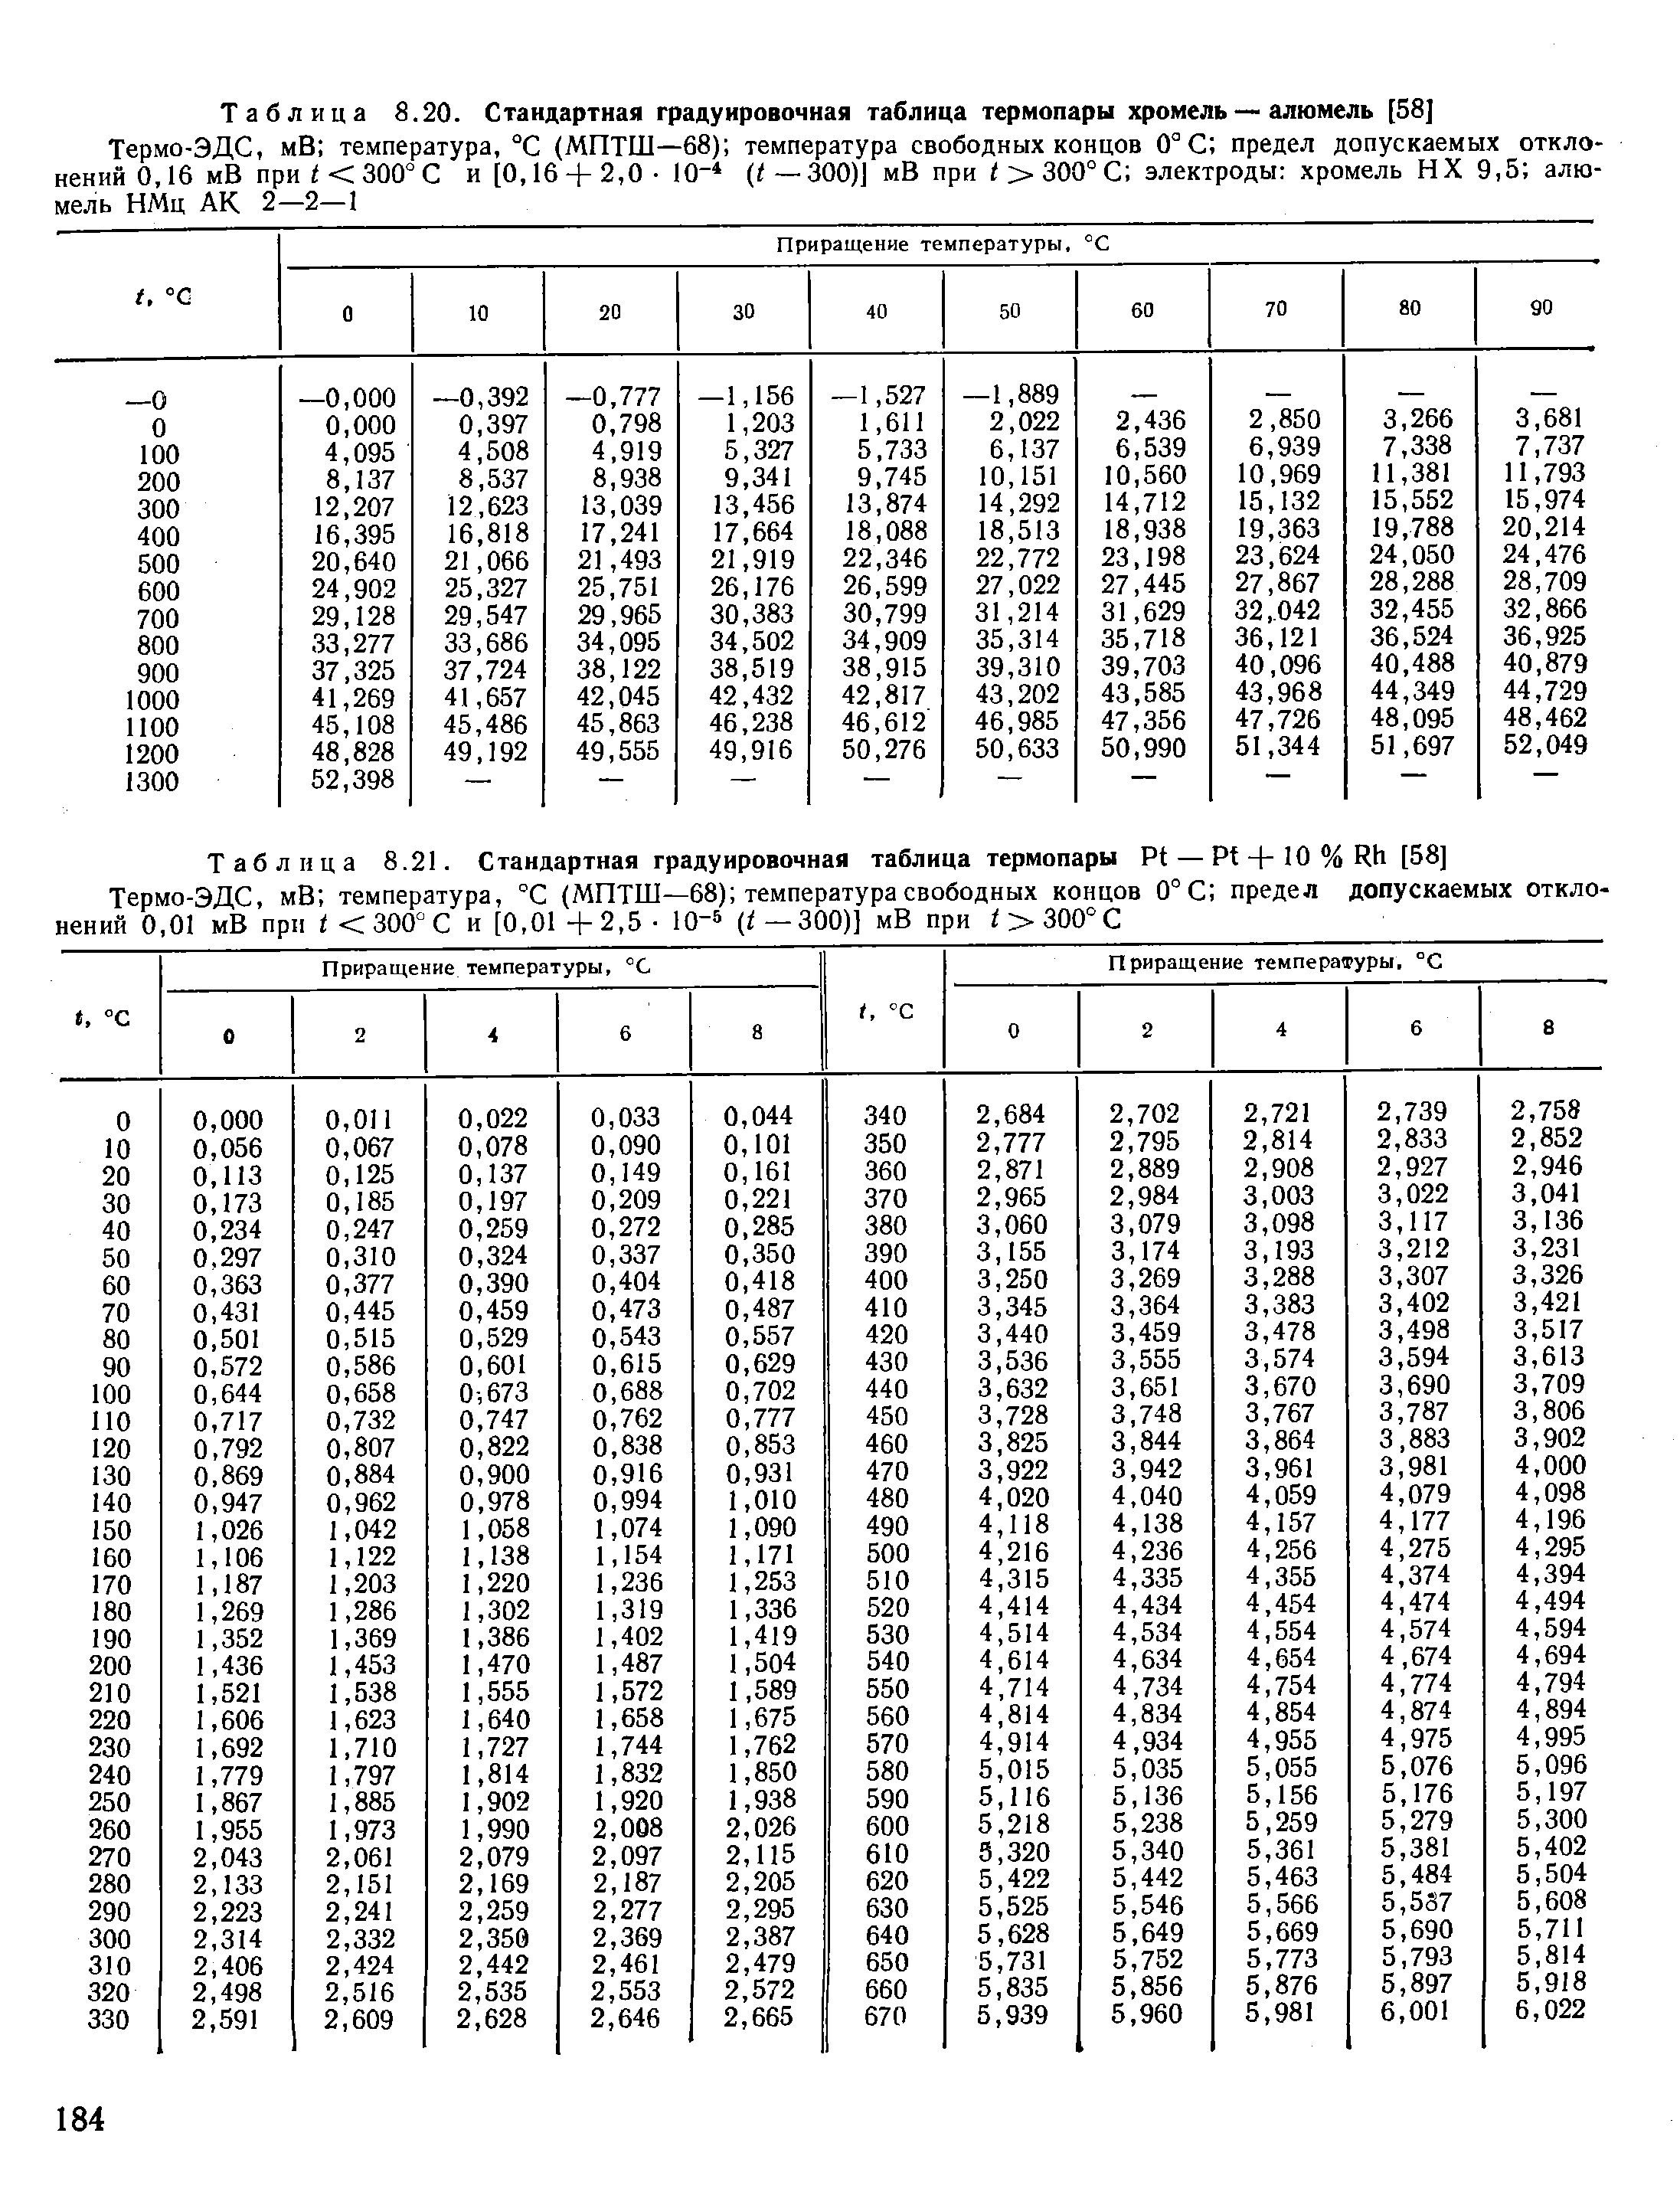 Таблица 8.21. Стандартная градуировочная таблица термопары Pt — Pt + 10 % Rh [58]
